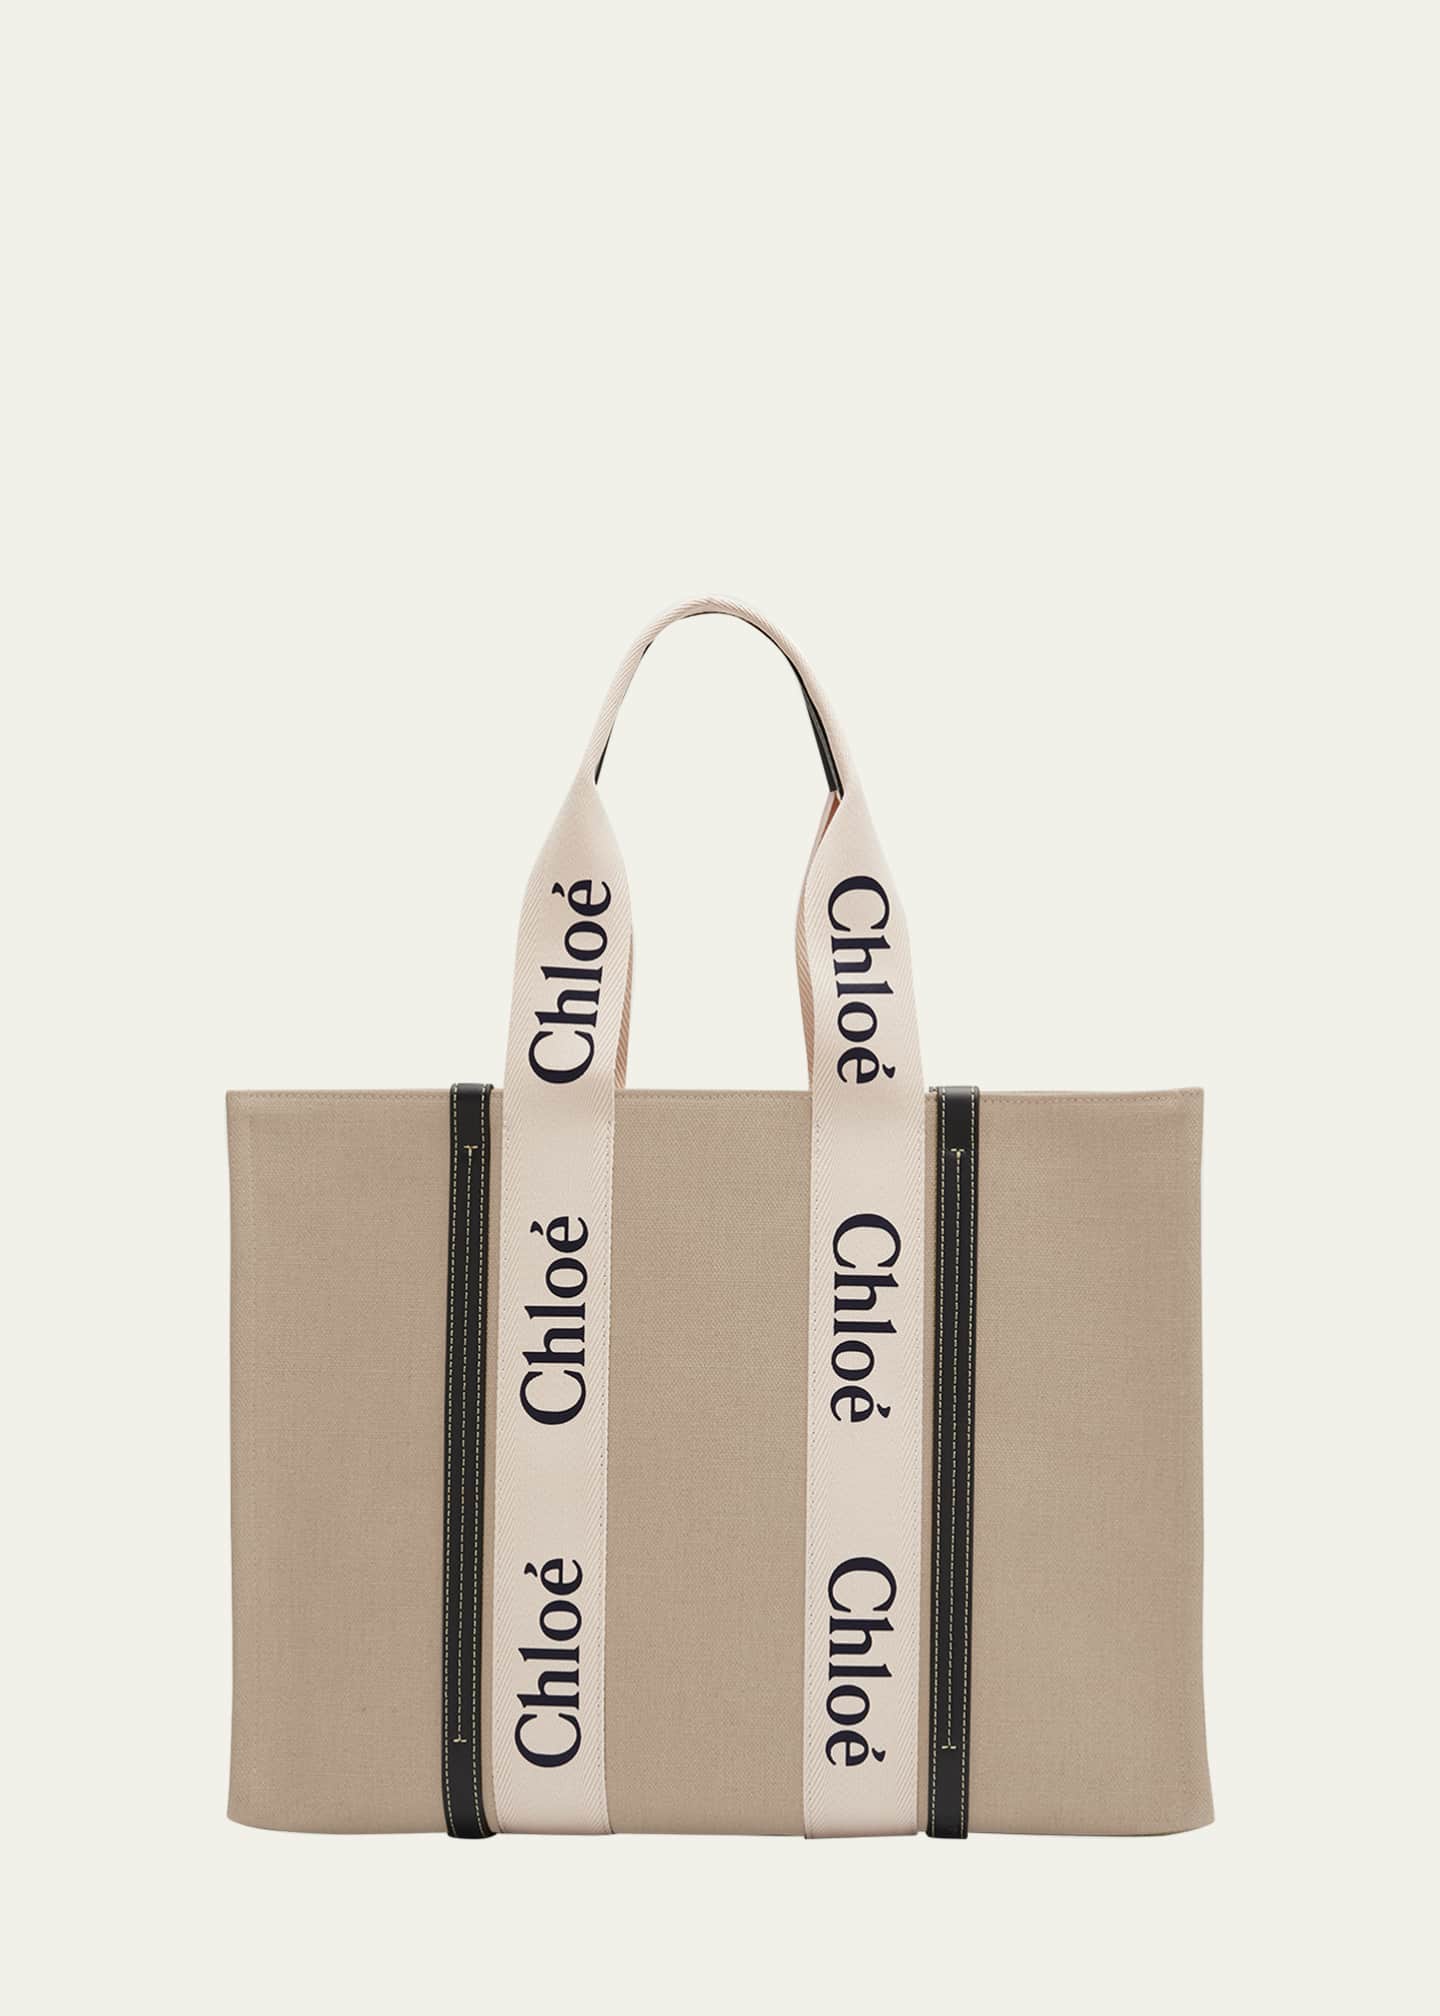 Chloe Woody Large Tote Bag in Linen - Bergdorf Goodman